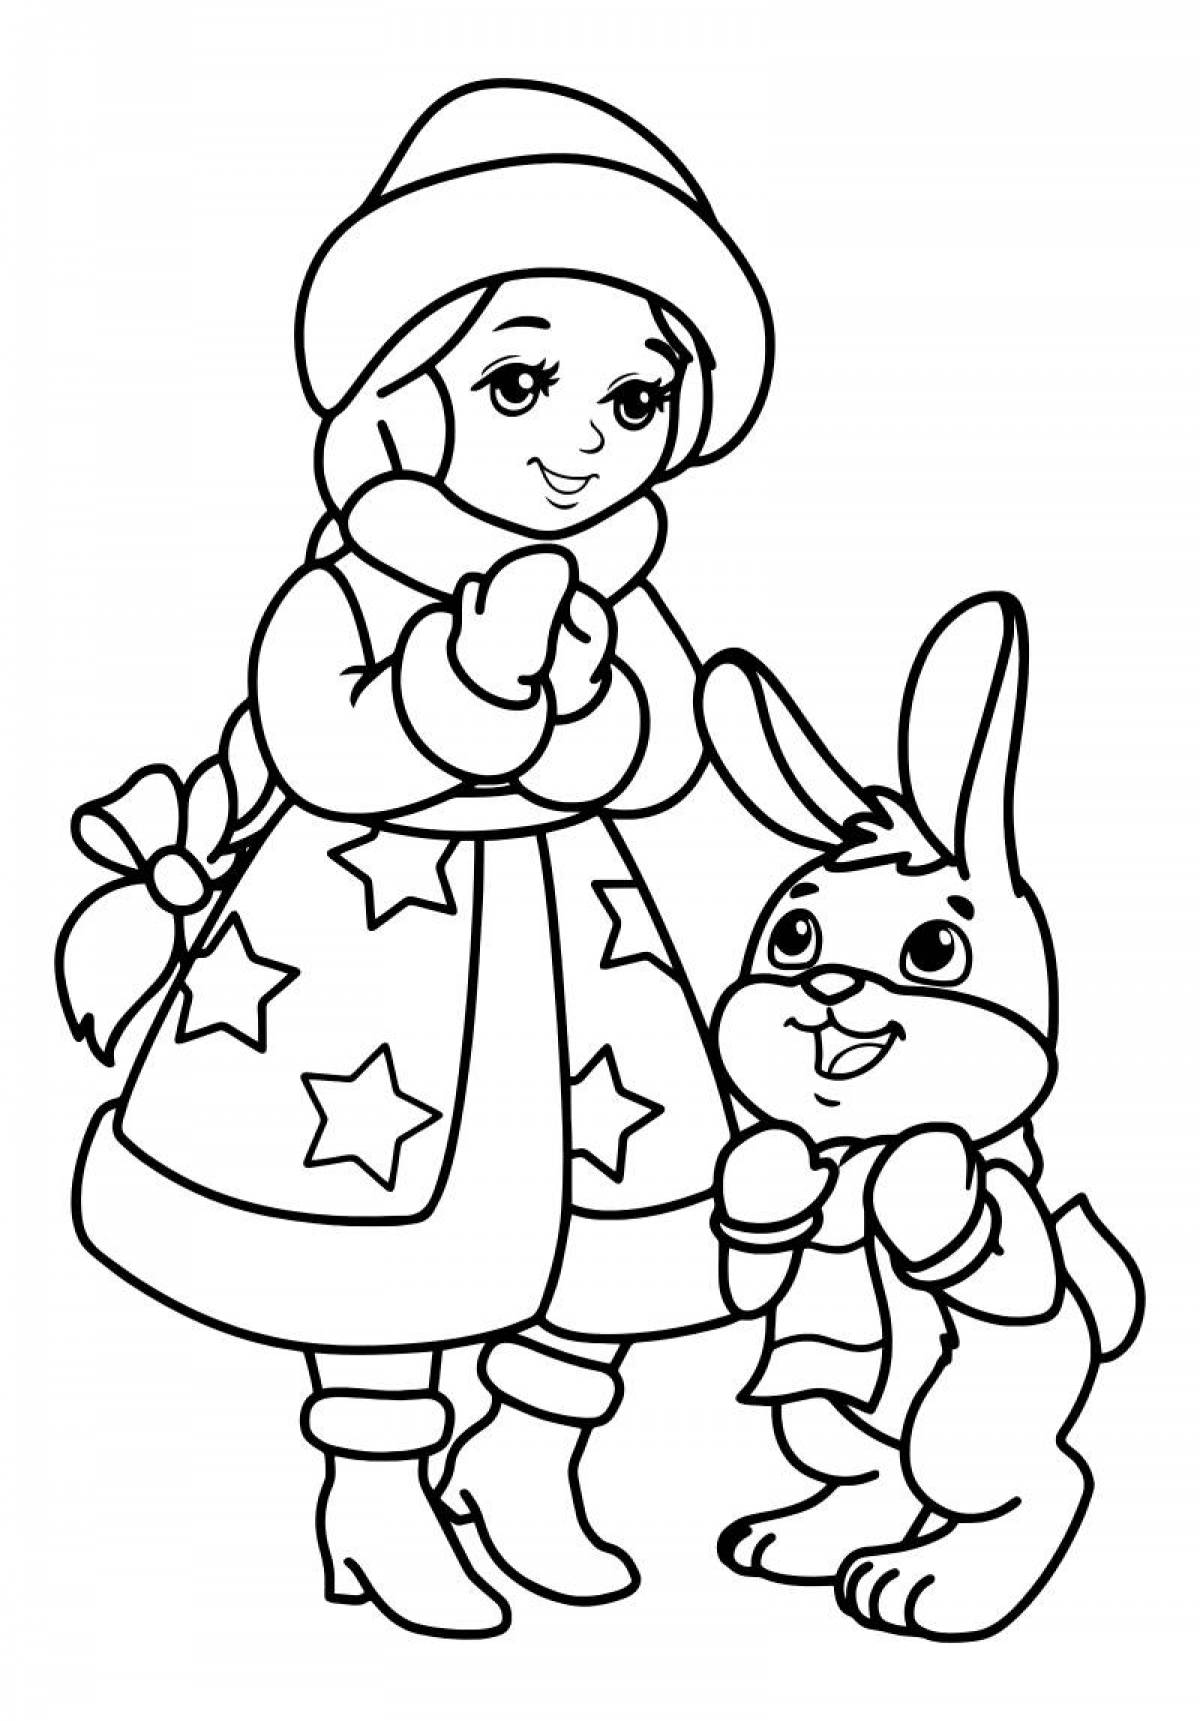 Adorable Christmas Bunny coloring book